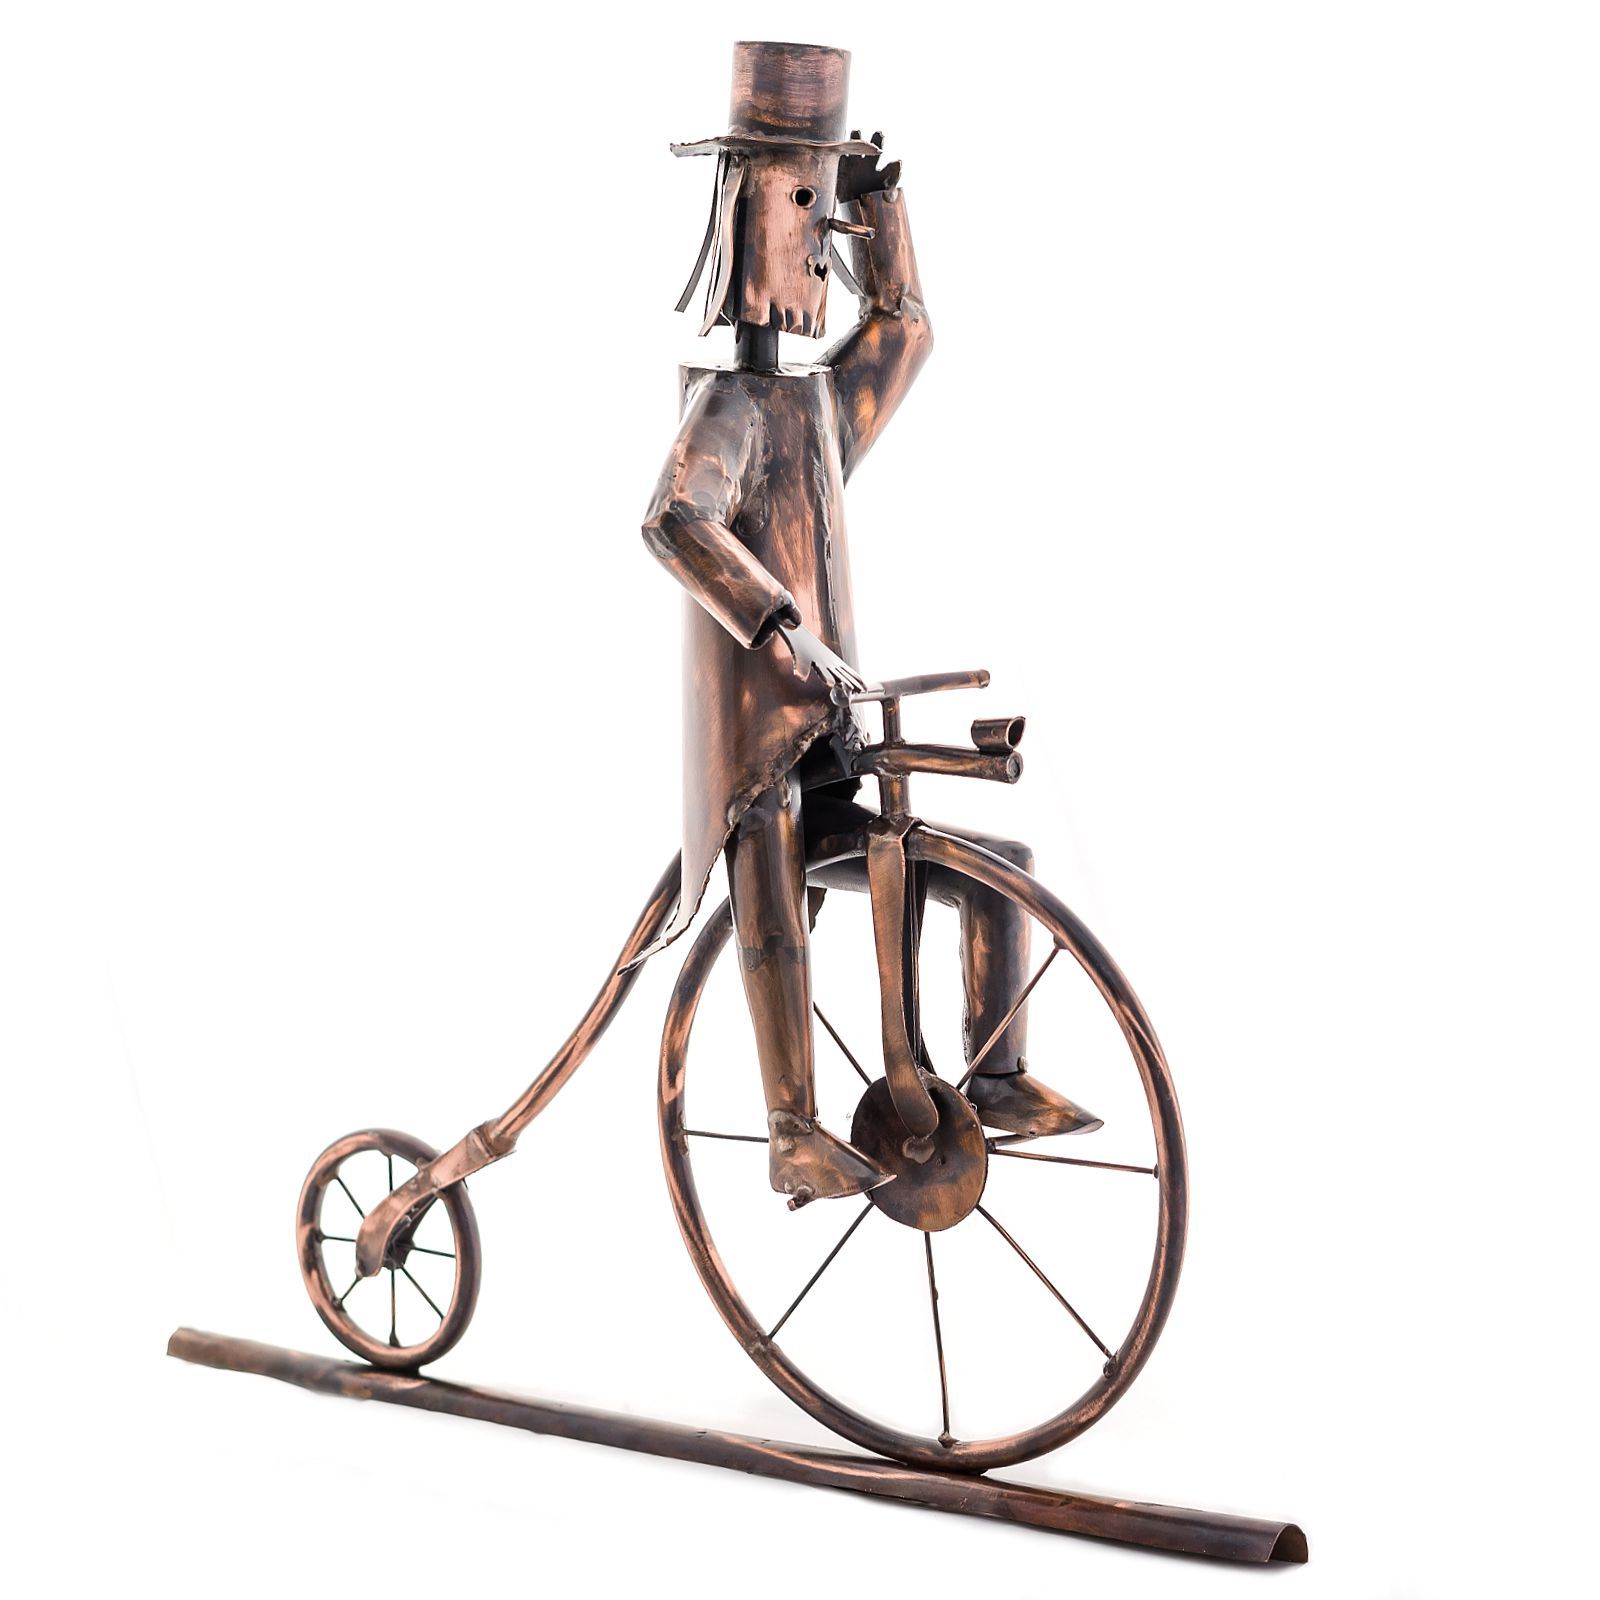 Koperen figuur voor de goot, penny-farthing rijder, historische fiets